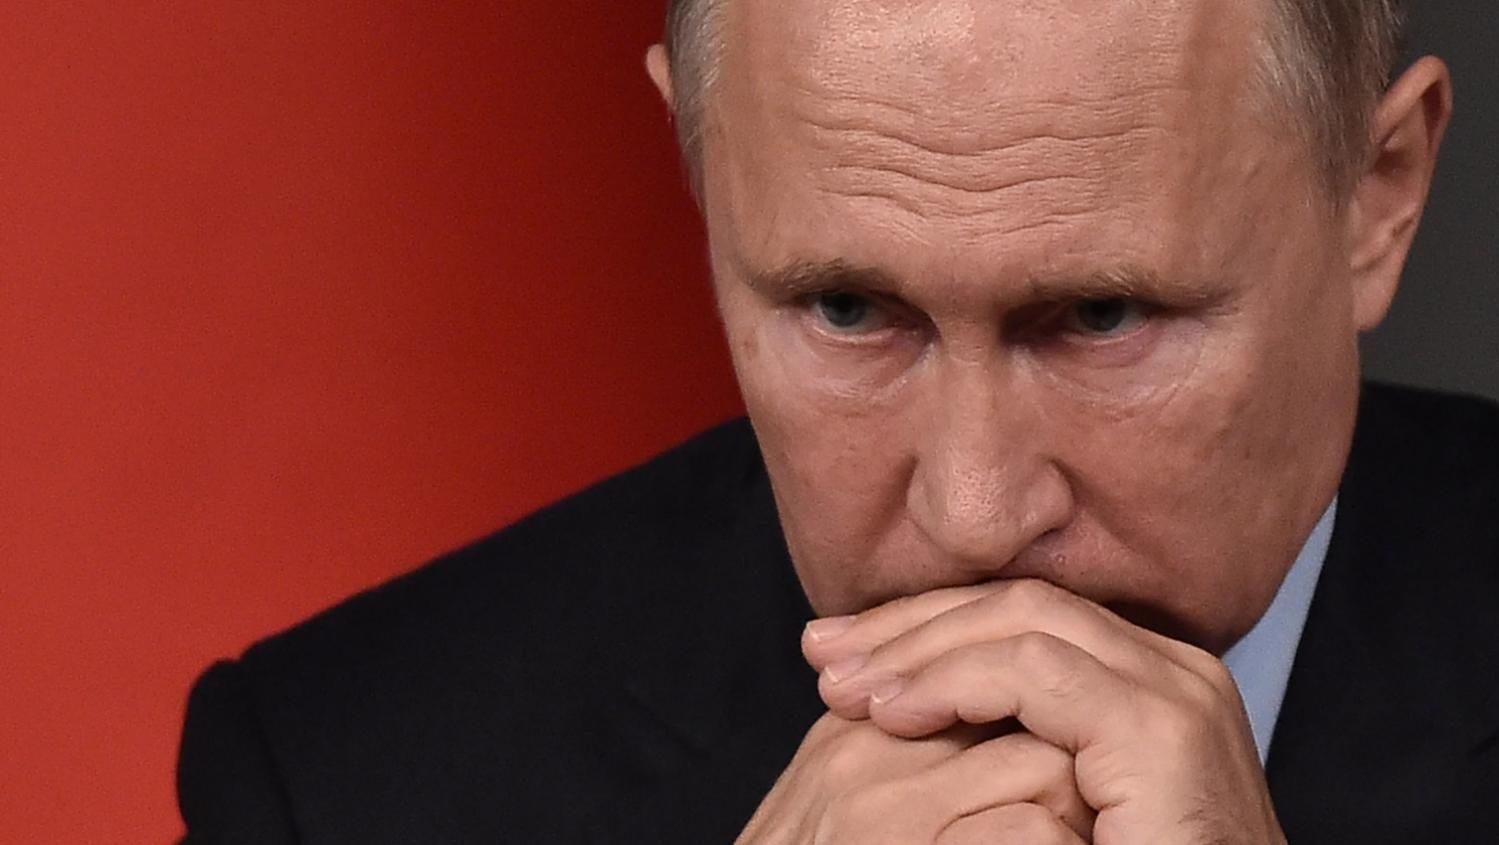 "Это позор! Что происходит?" - россияне возмущены новым поражением, требуя пояснений от Путина